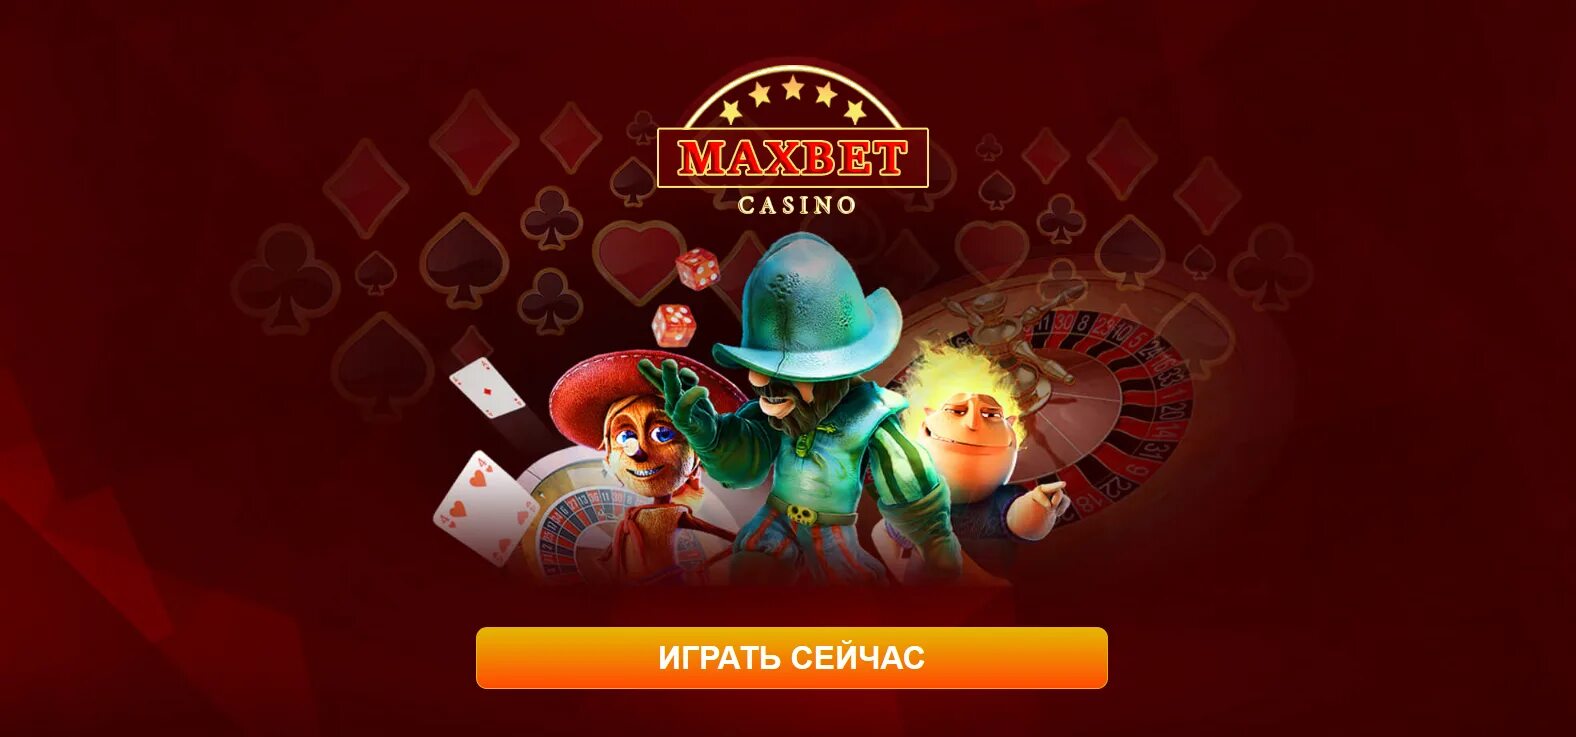 Максбетслотс maxbet das5. Казино maxbetslots. Максбет казино. Игры максбет.